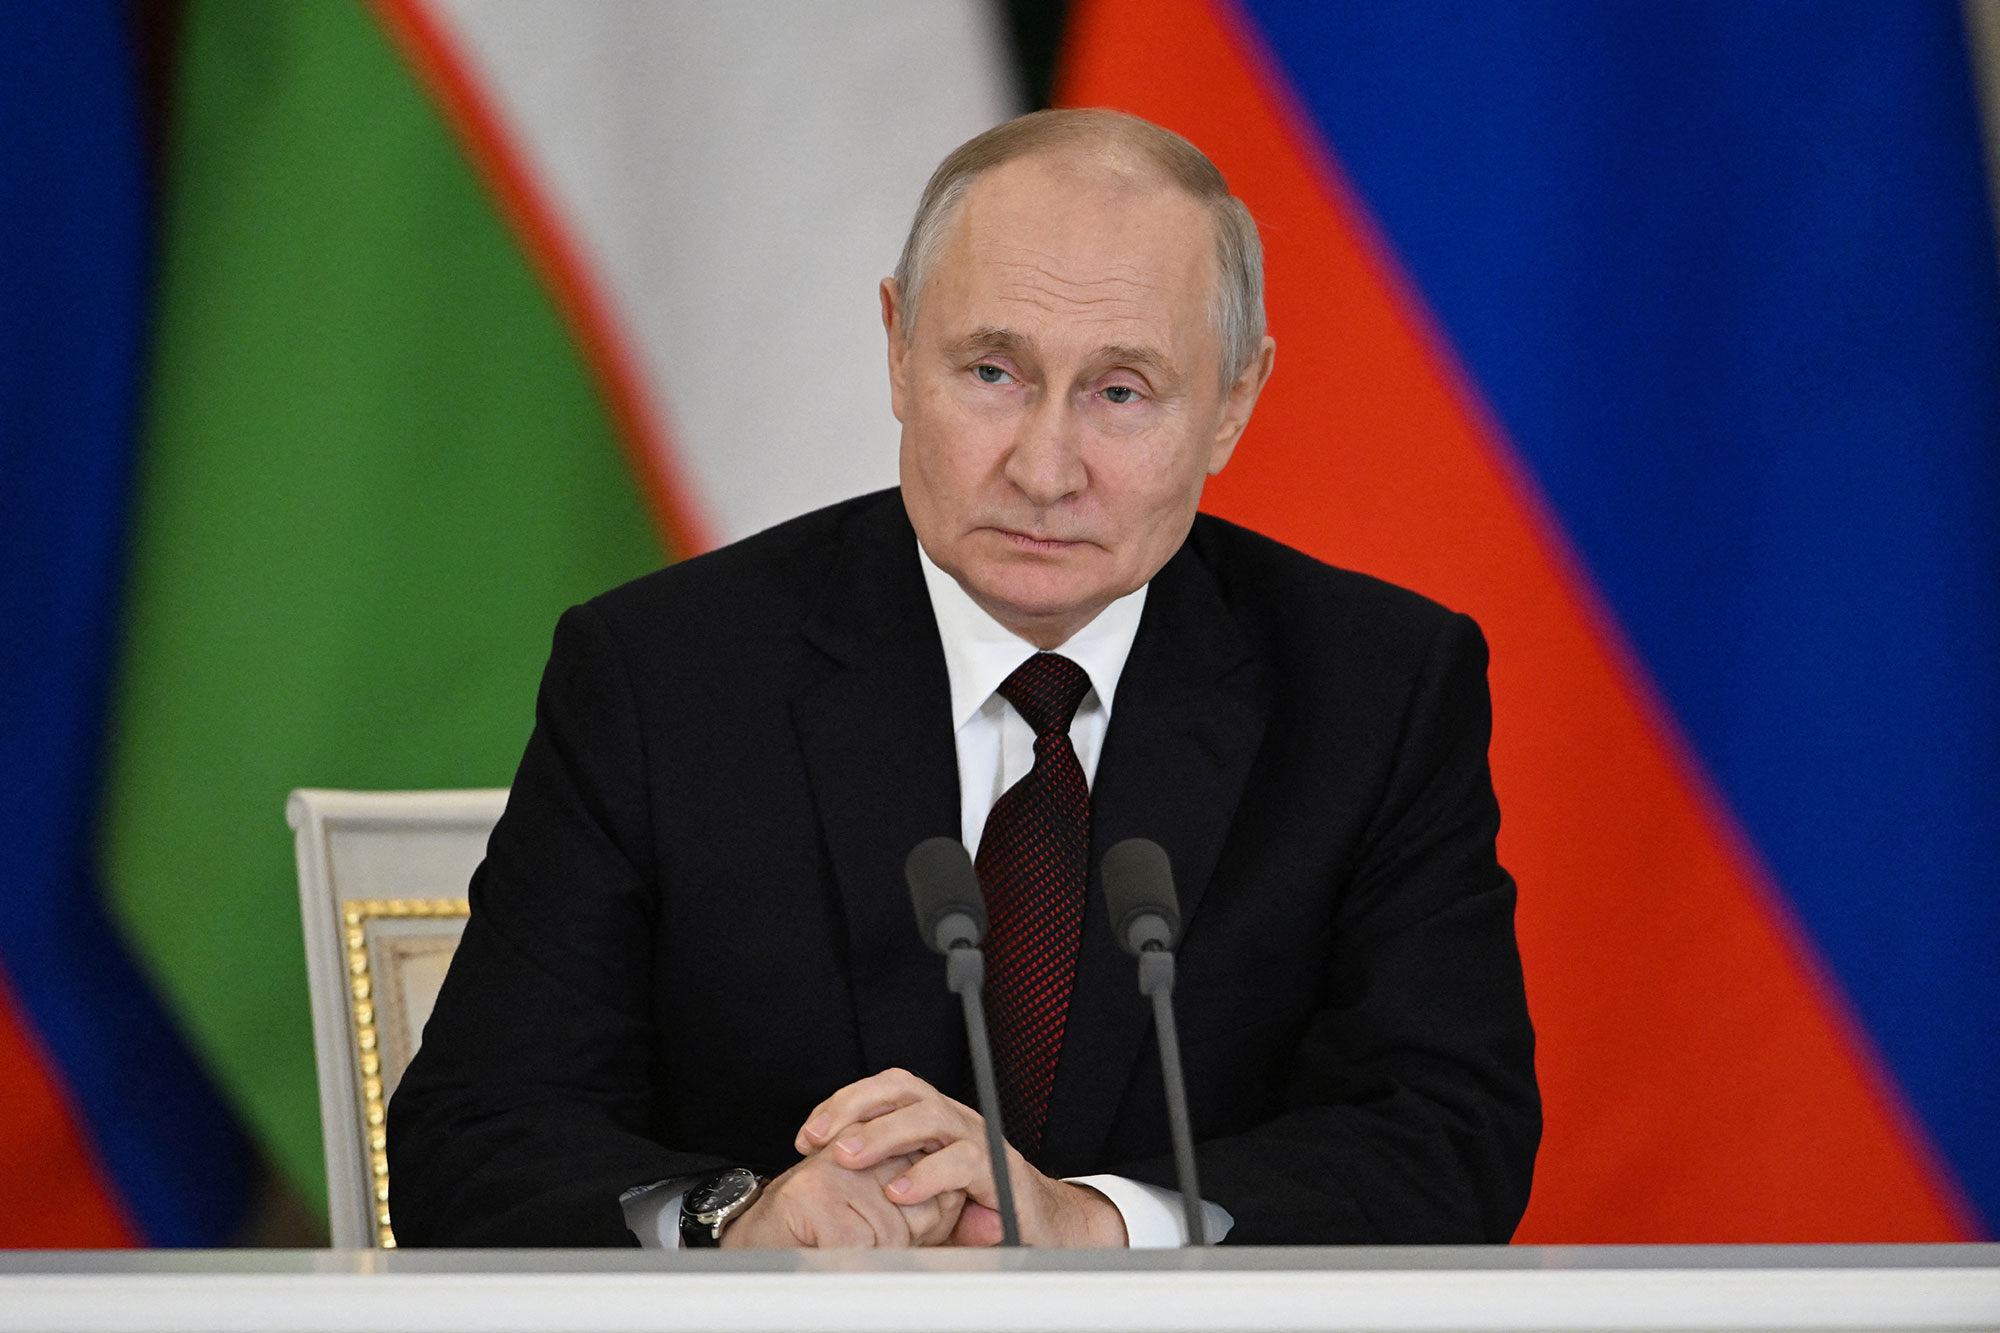 فلاديمير بوتين: روسيا مستعدة لاستخدام الأسلحة النووية في حالتين